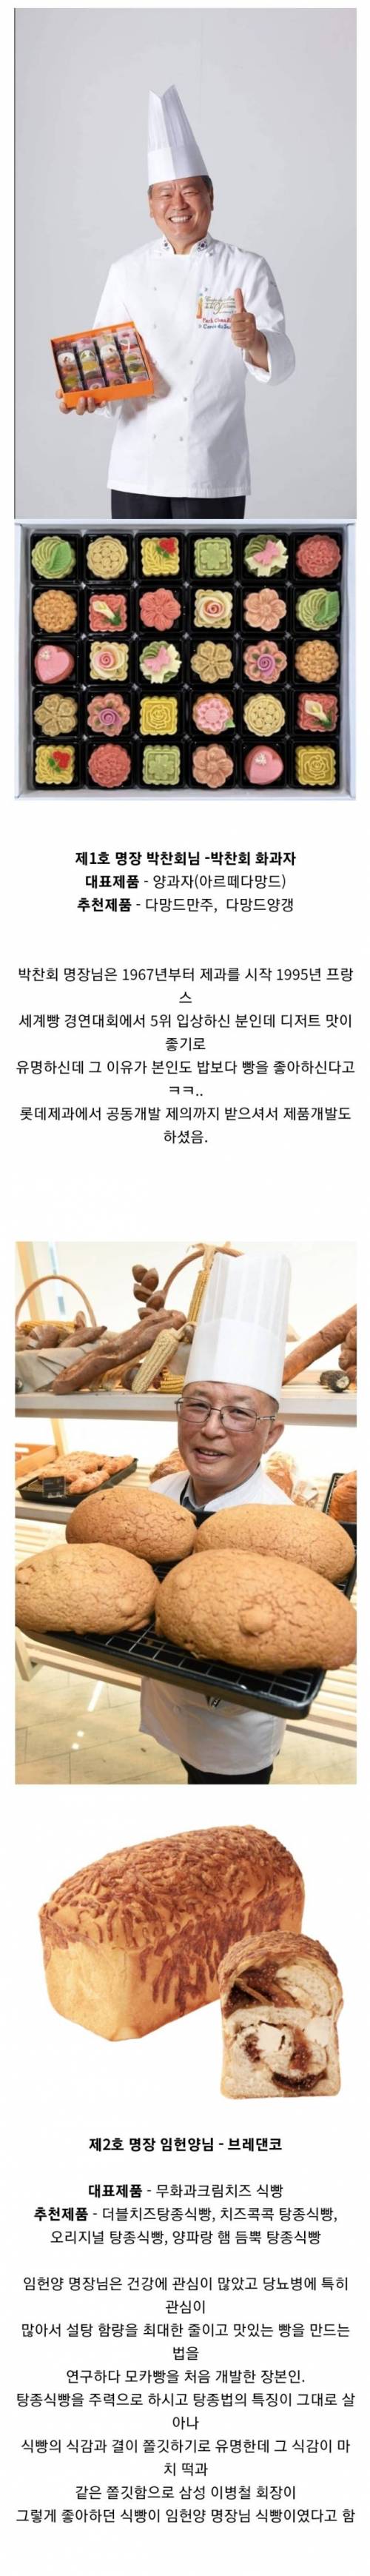 한국 제과명장 14인과 대표빵